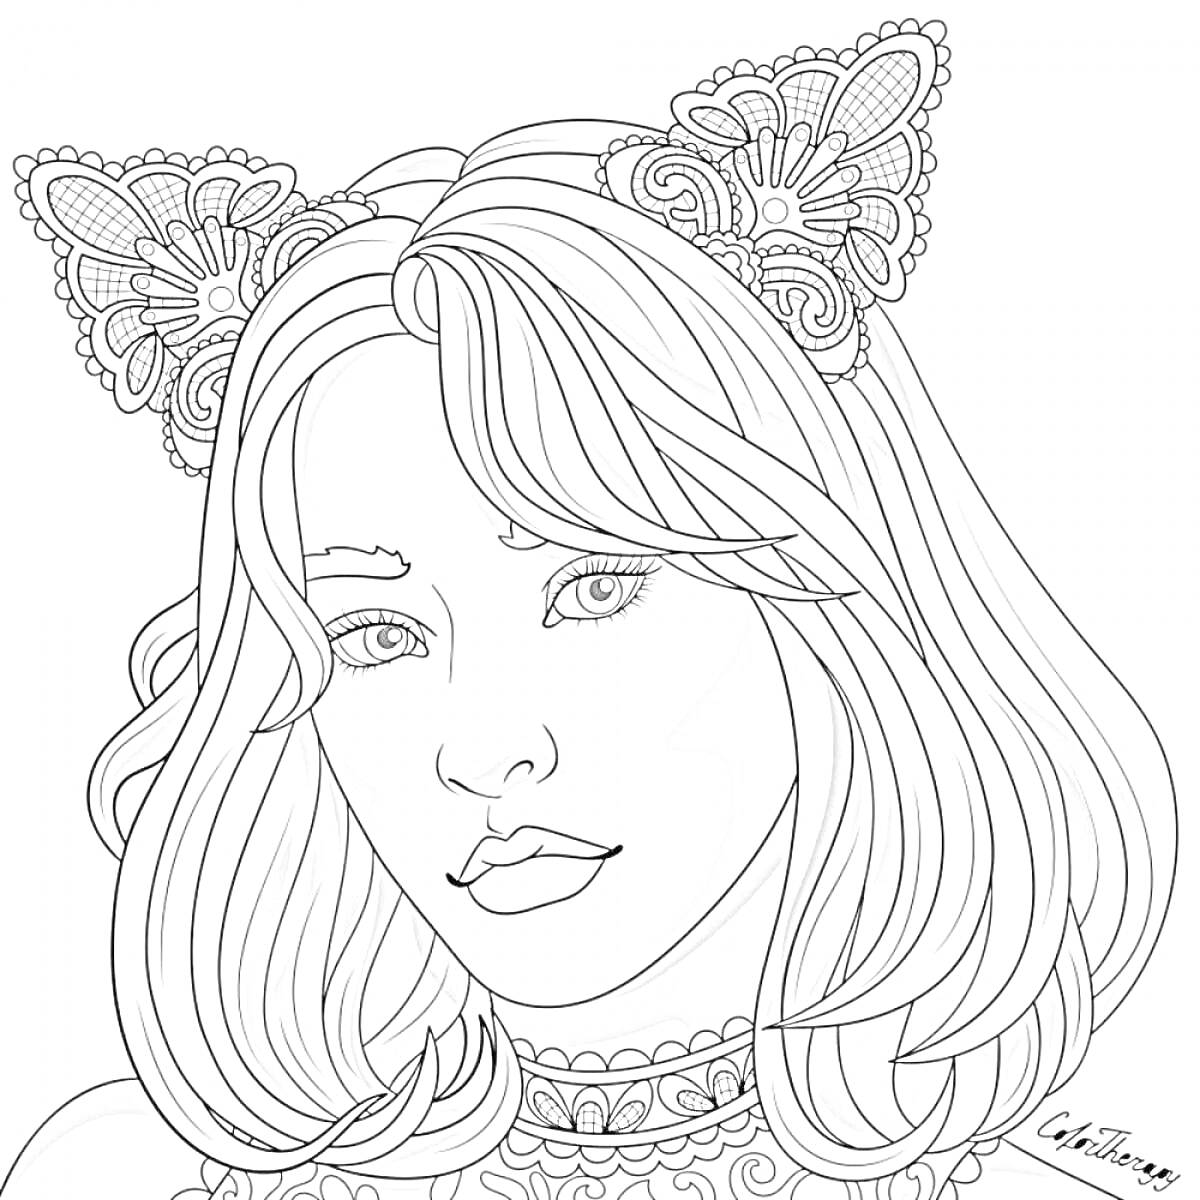 Раскраска Портрет девушки с длинными волосами в ободке с кружевными кошачьими ушками